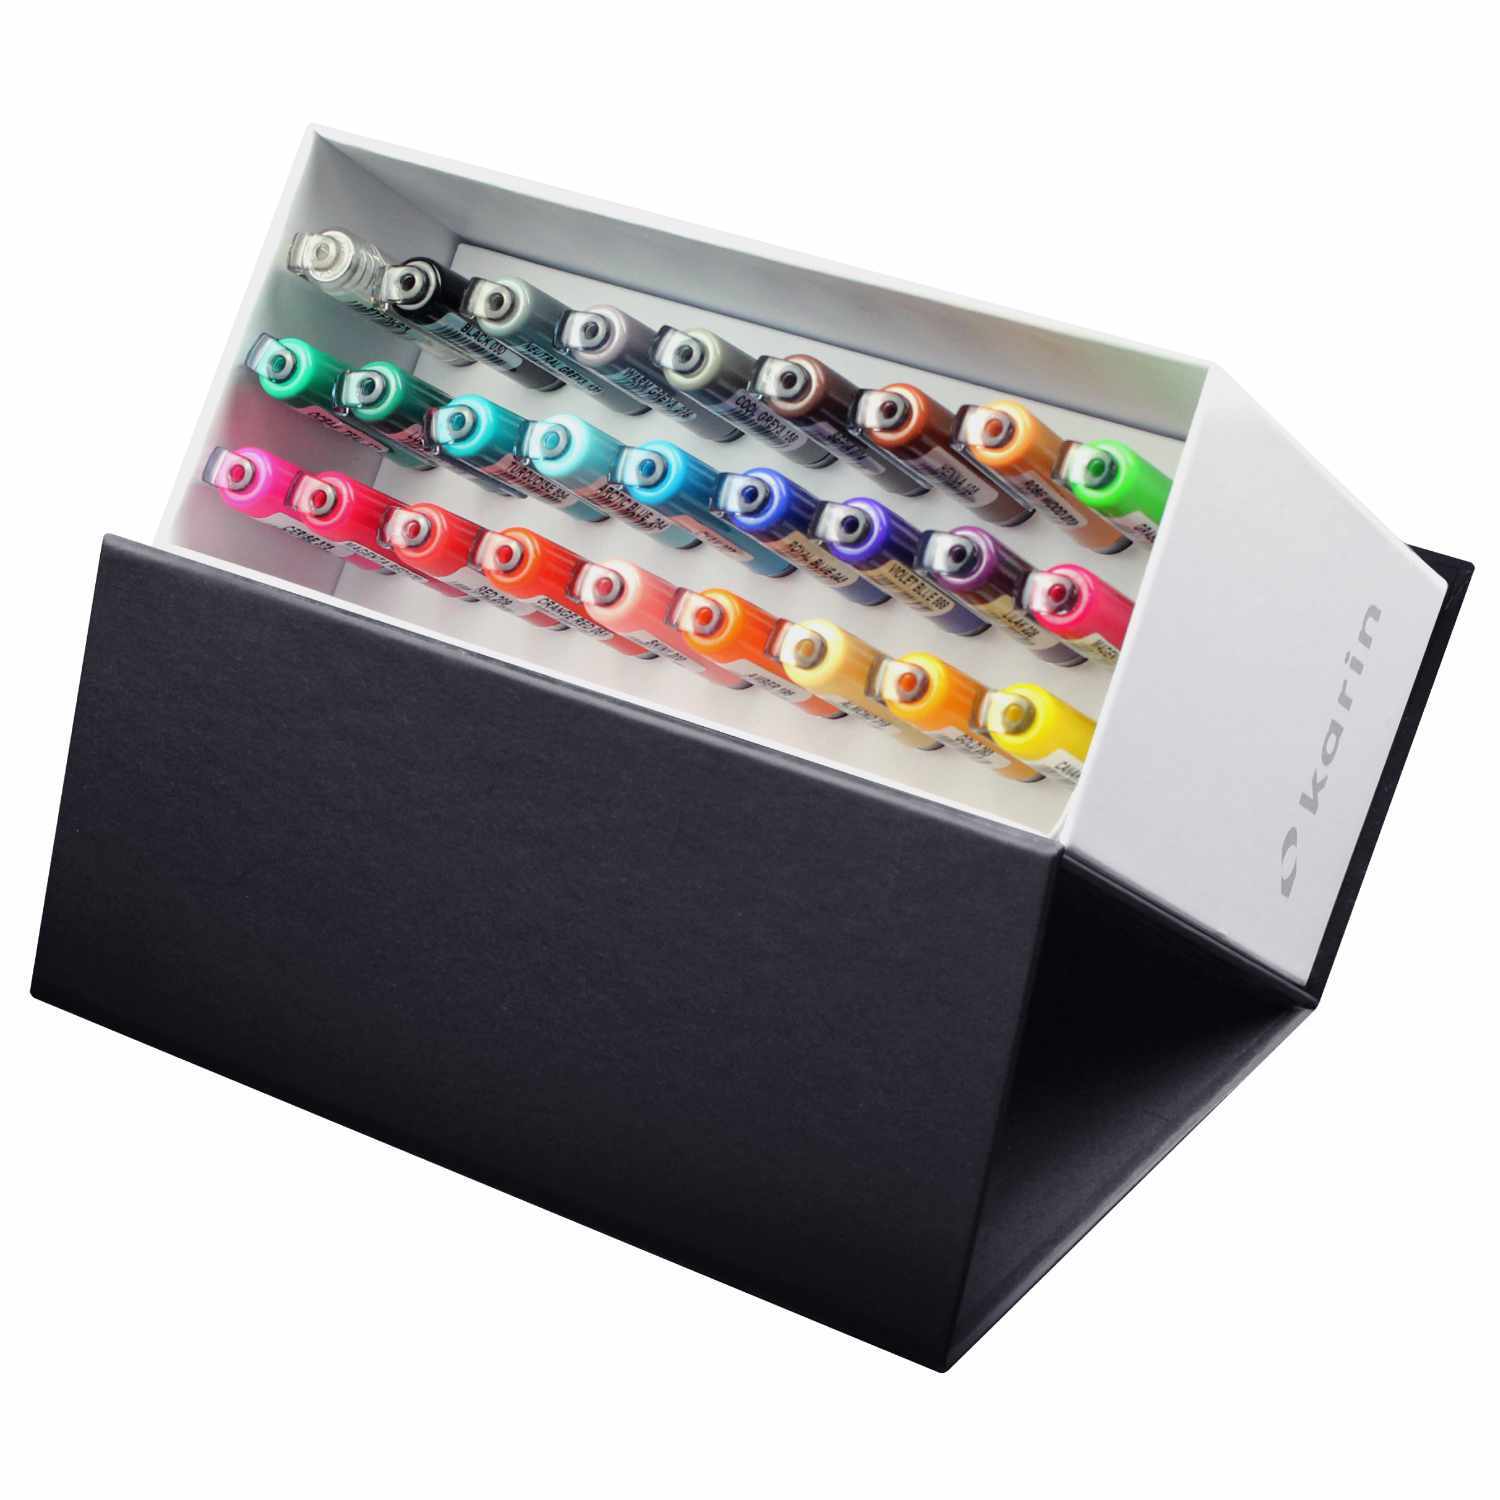 Brushmarker PRO Mini Box 26 Farben + 1 Blender